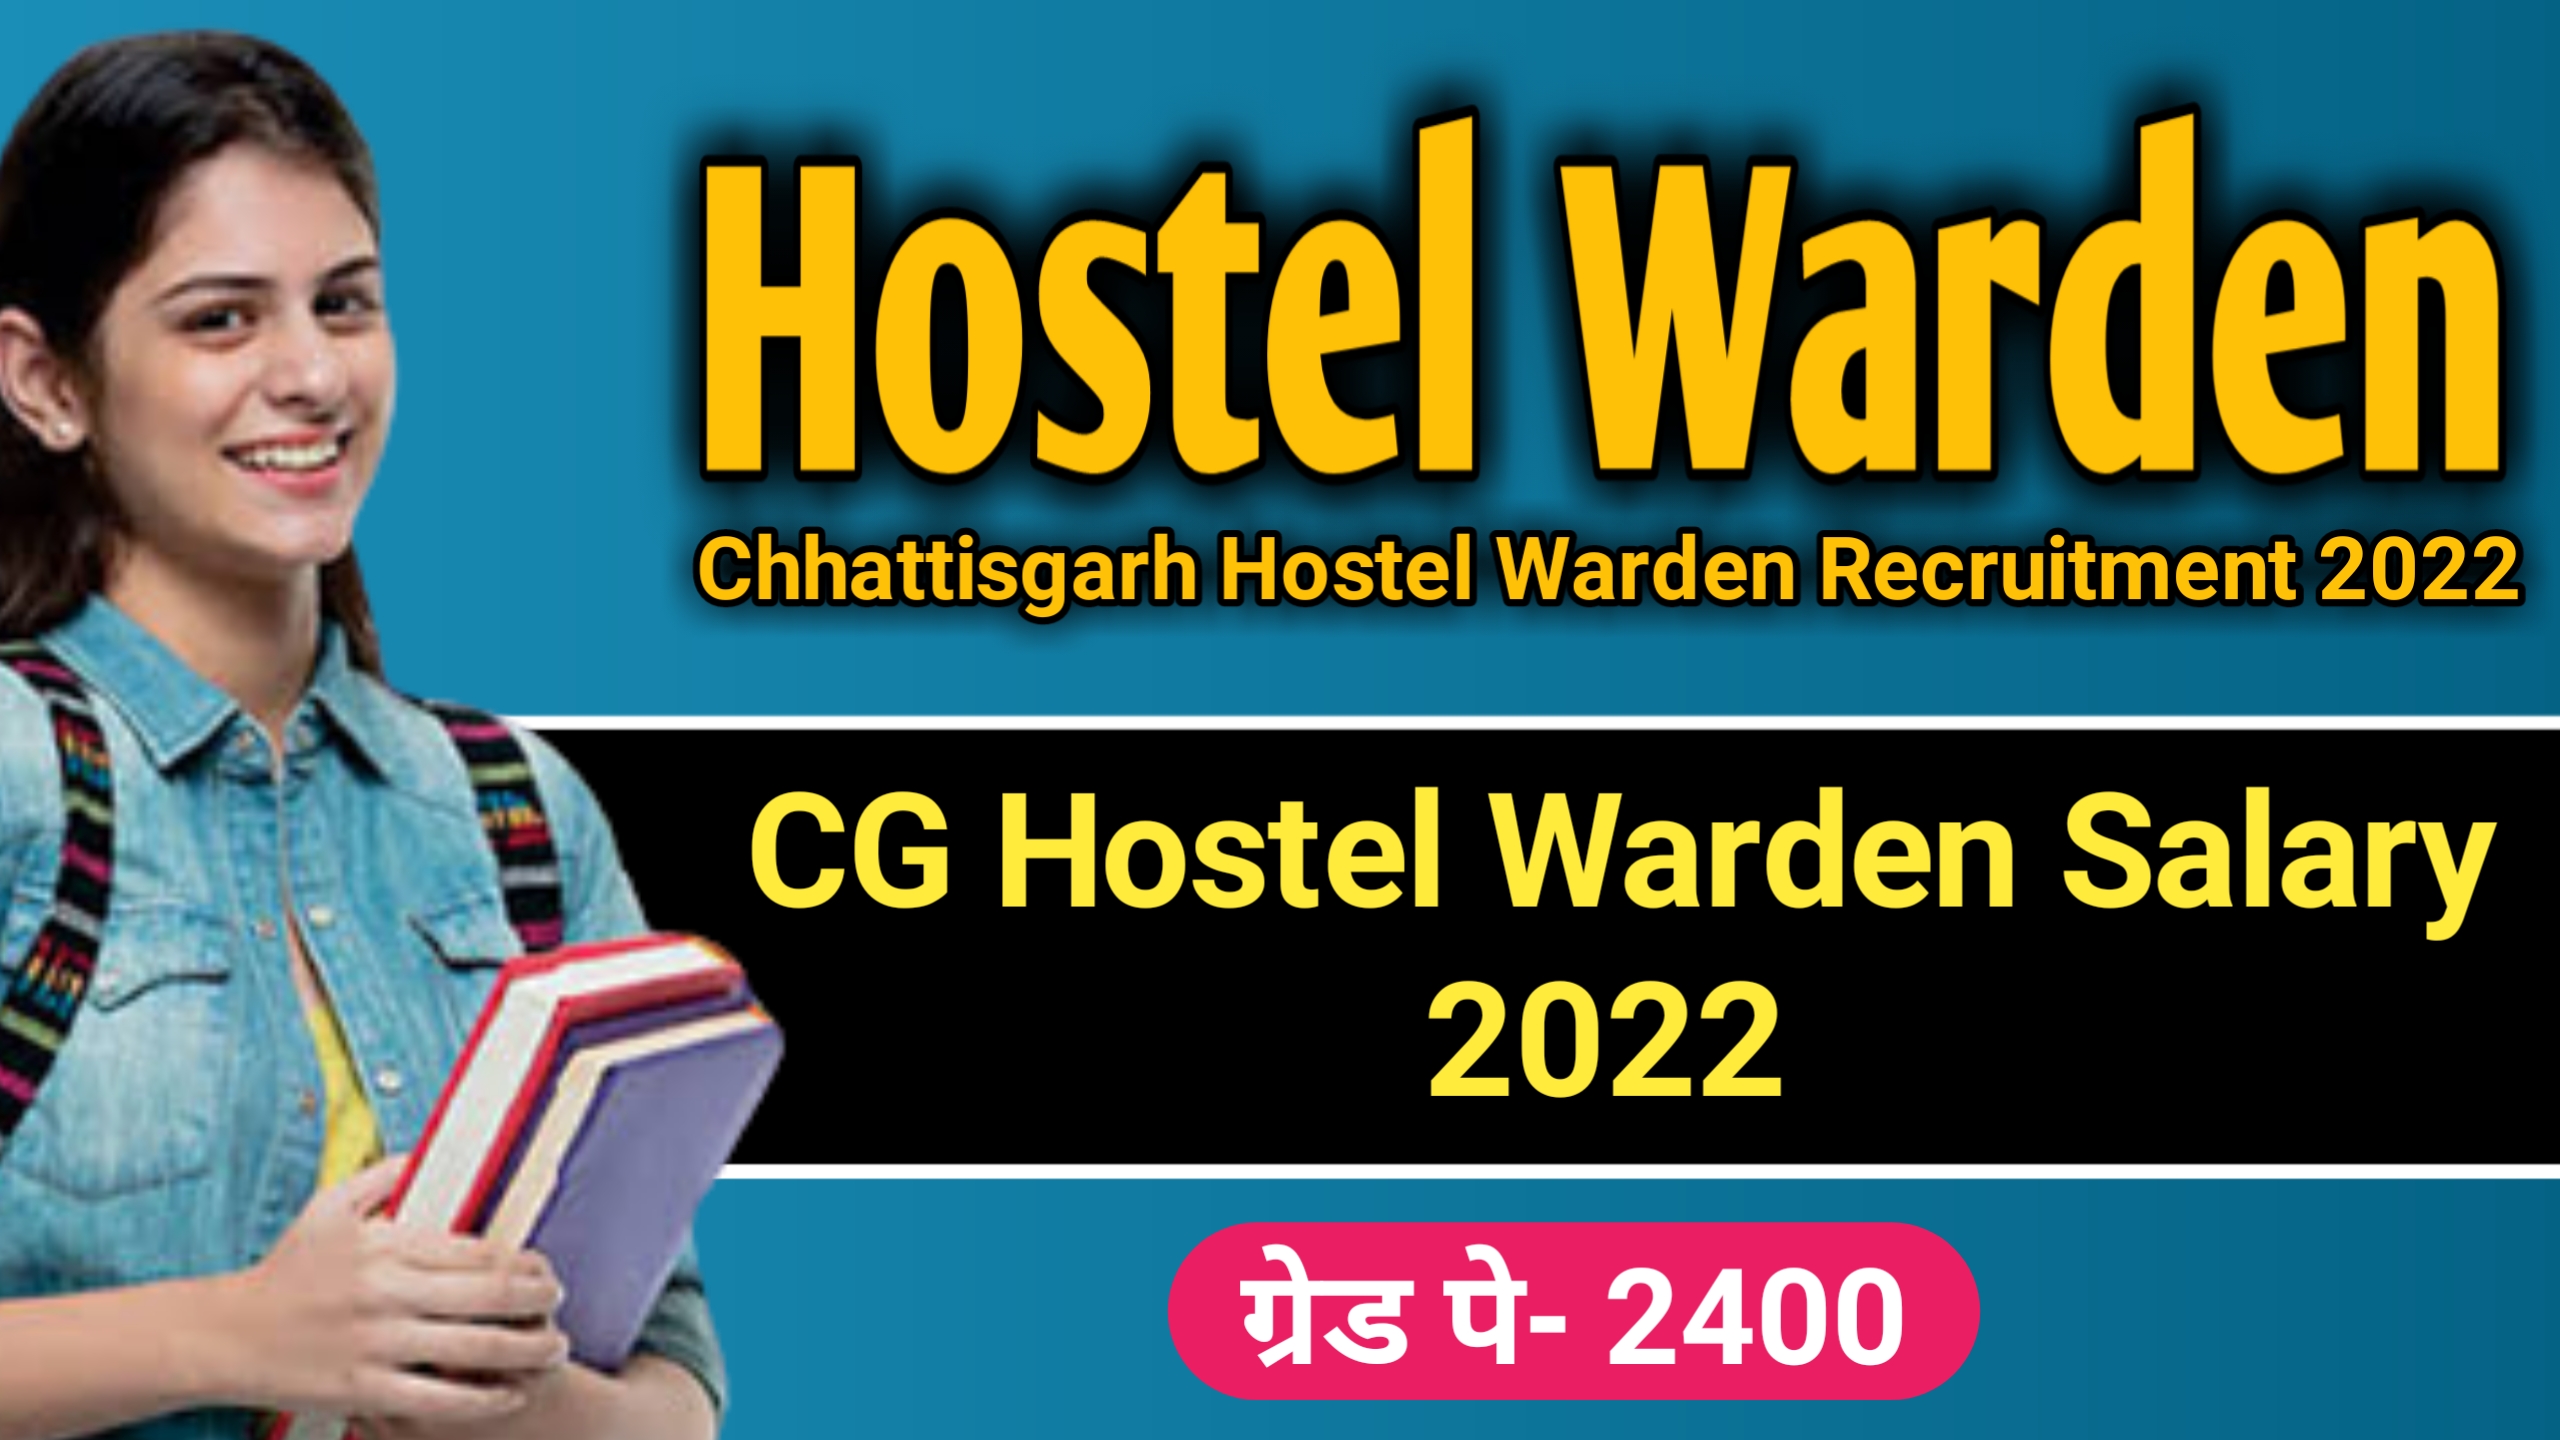 Cg hostel warden 2022